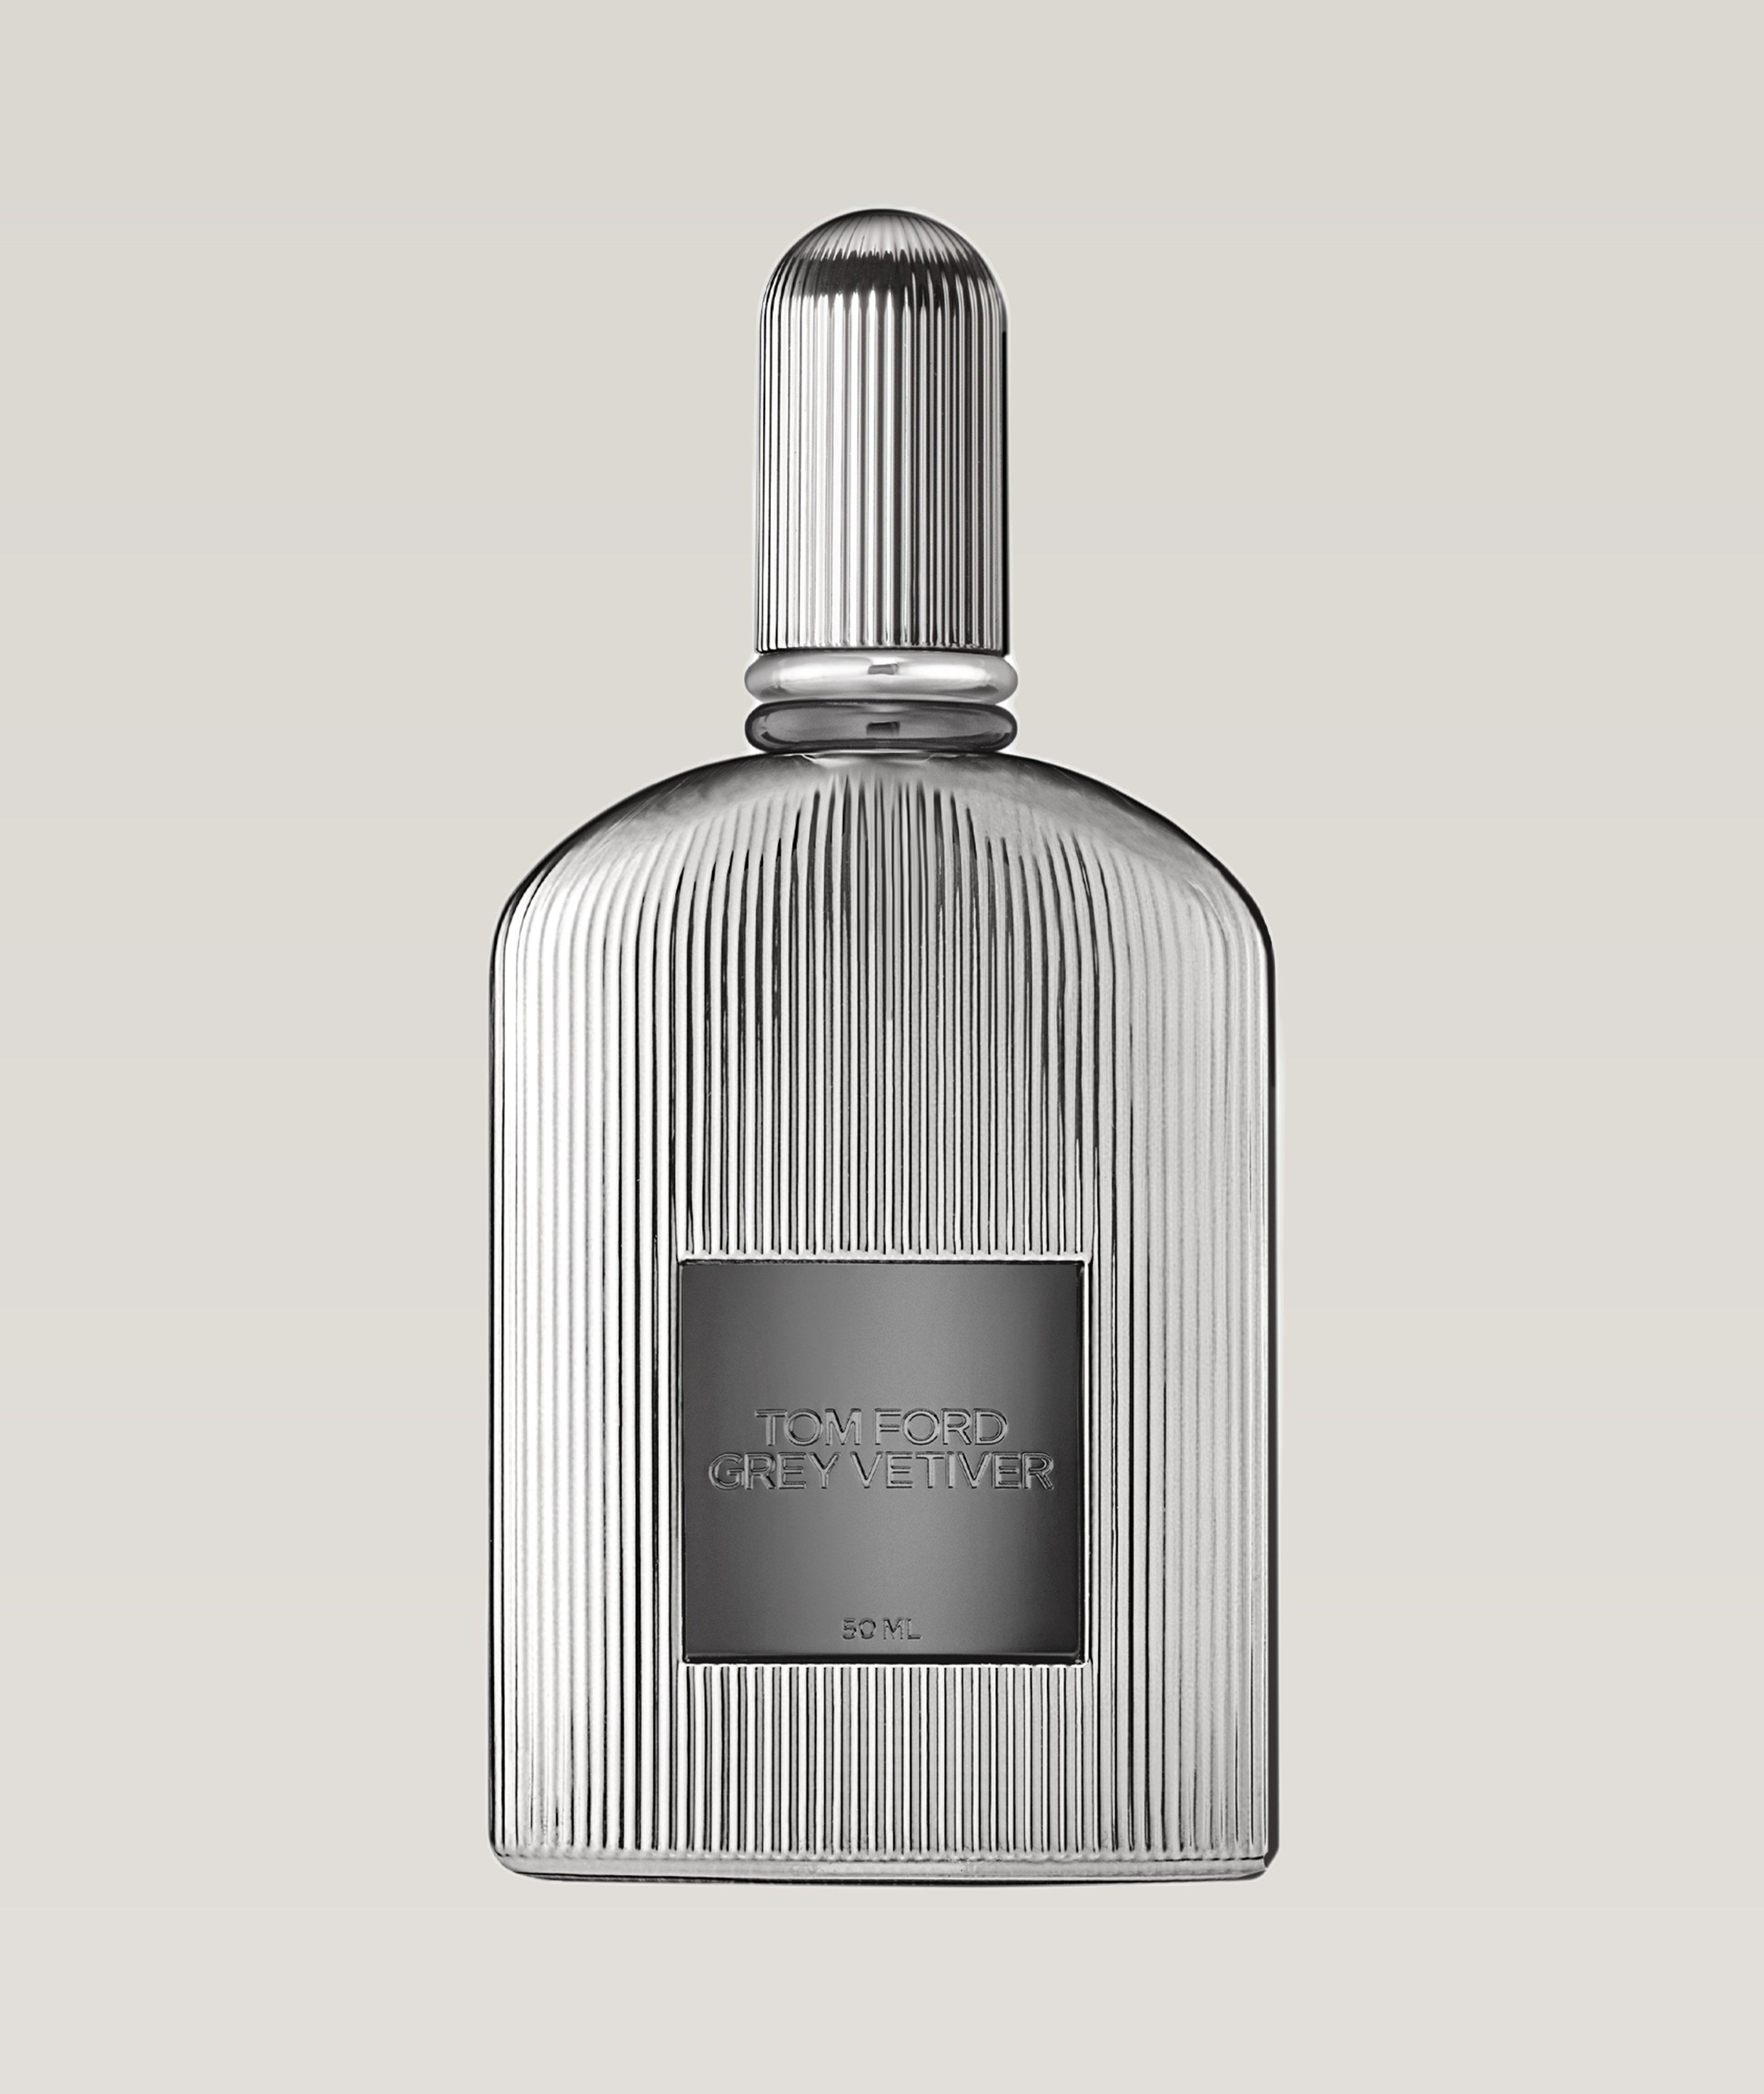 Grey Vetiver Eau De Parfum 50ml image 0